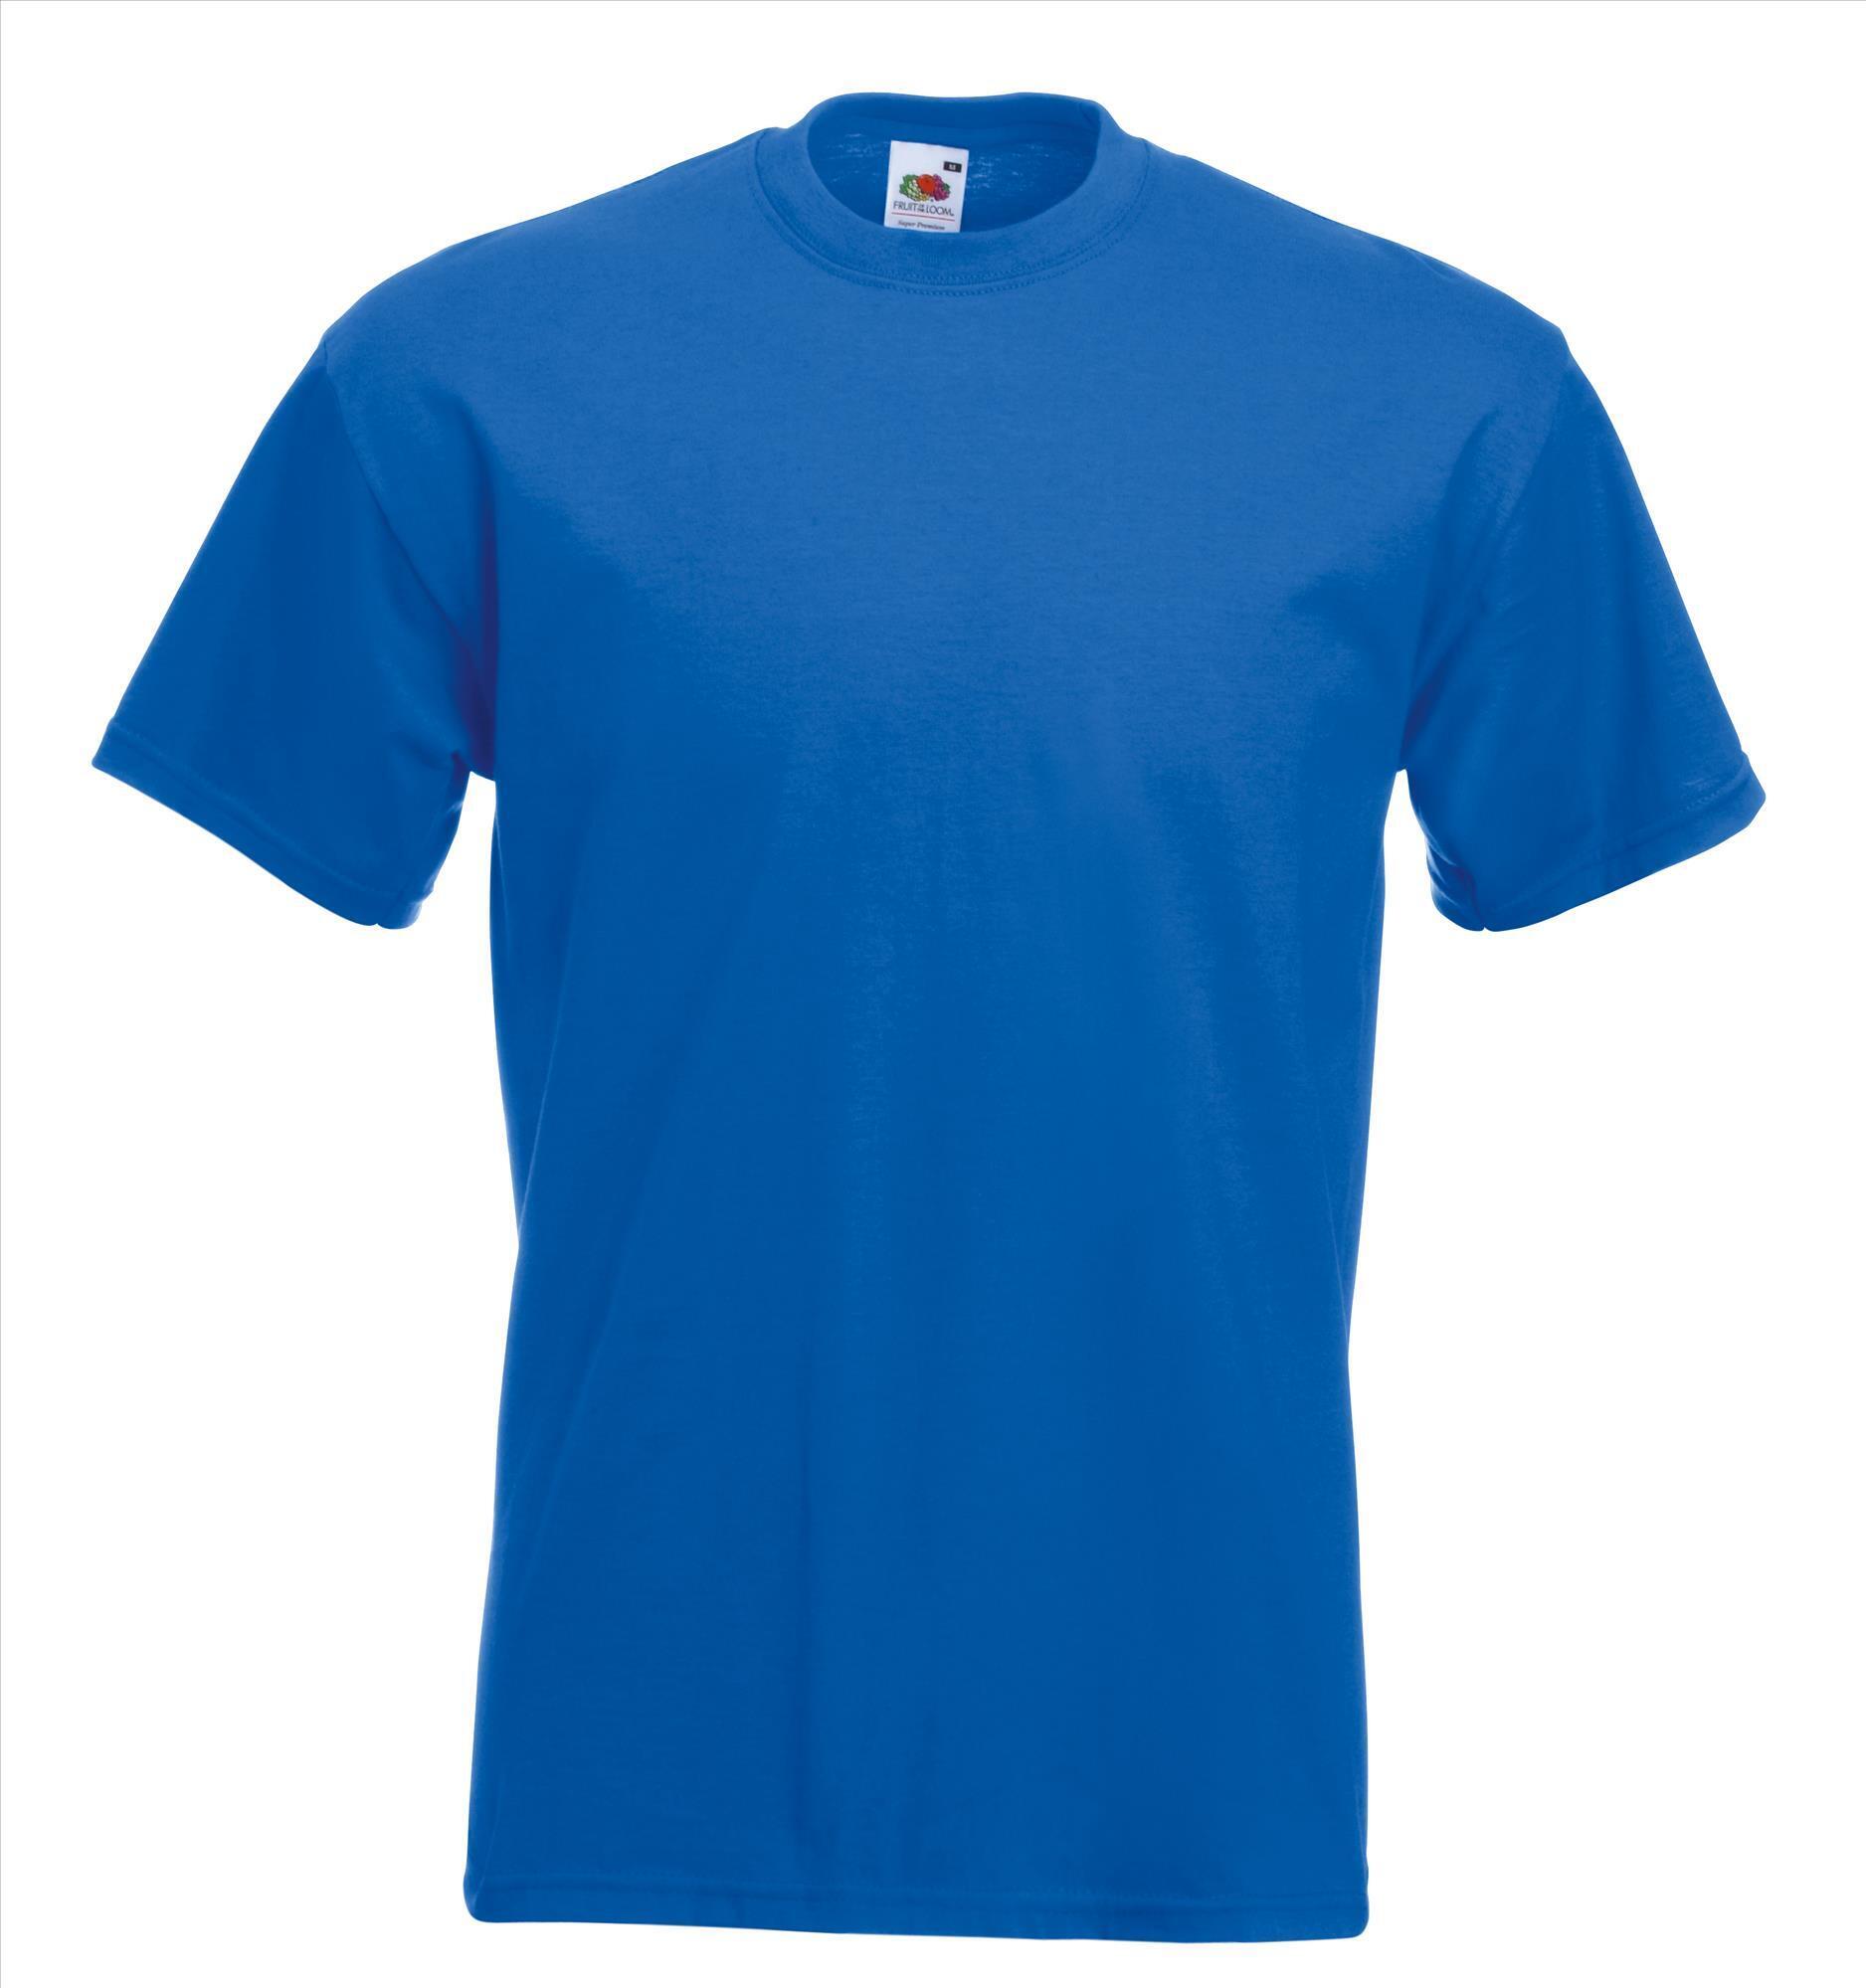 Dik gebreide T-shirt royal blauw voor mannen ronde hals te personaliseren